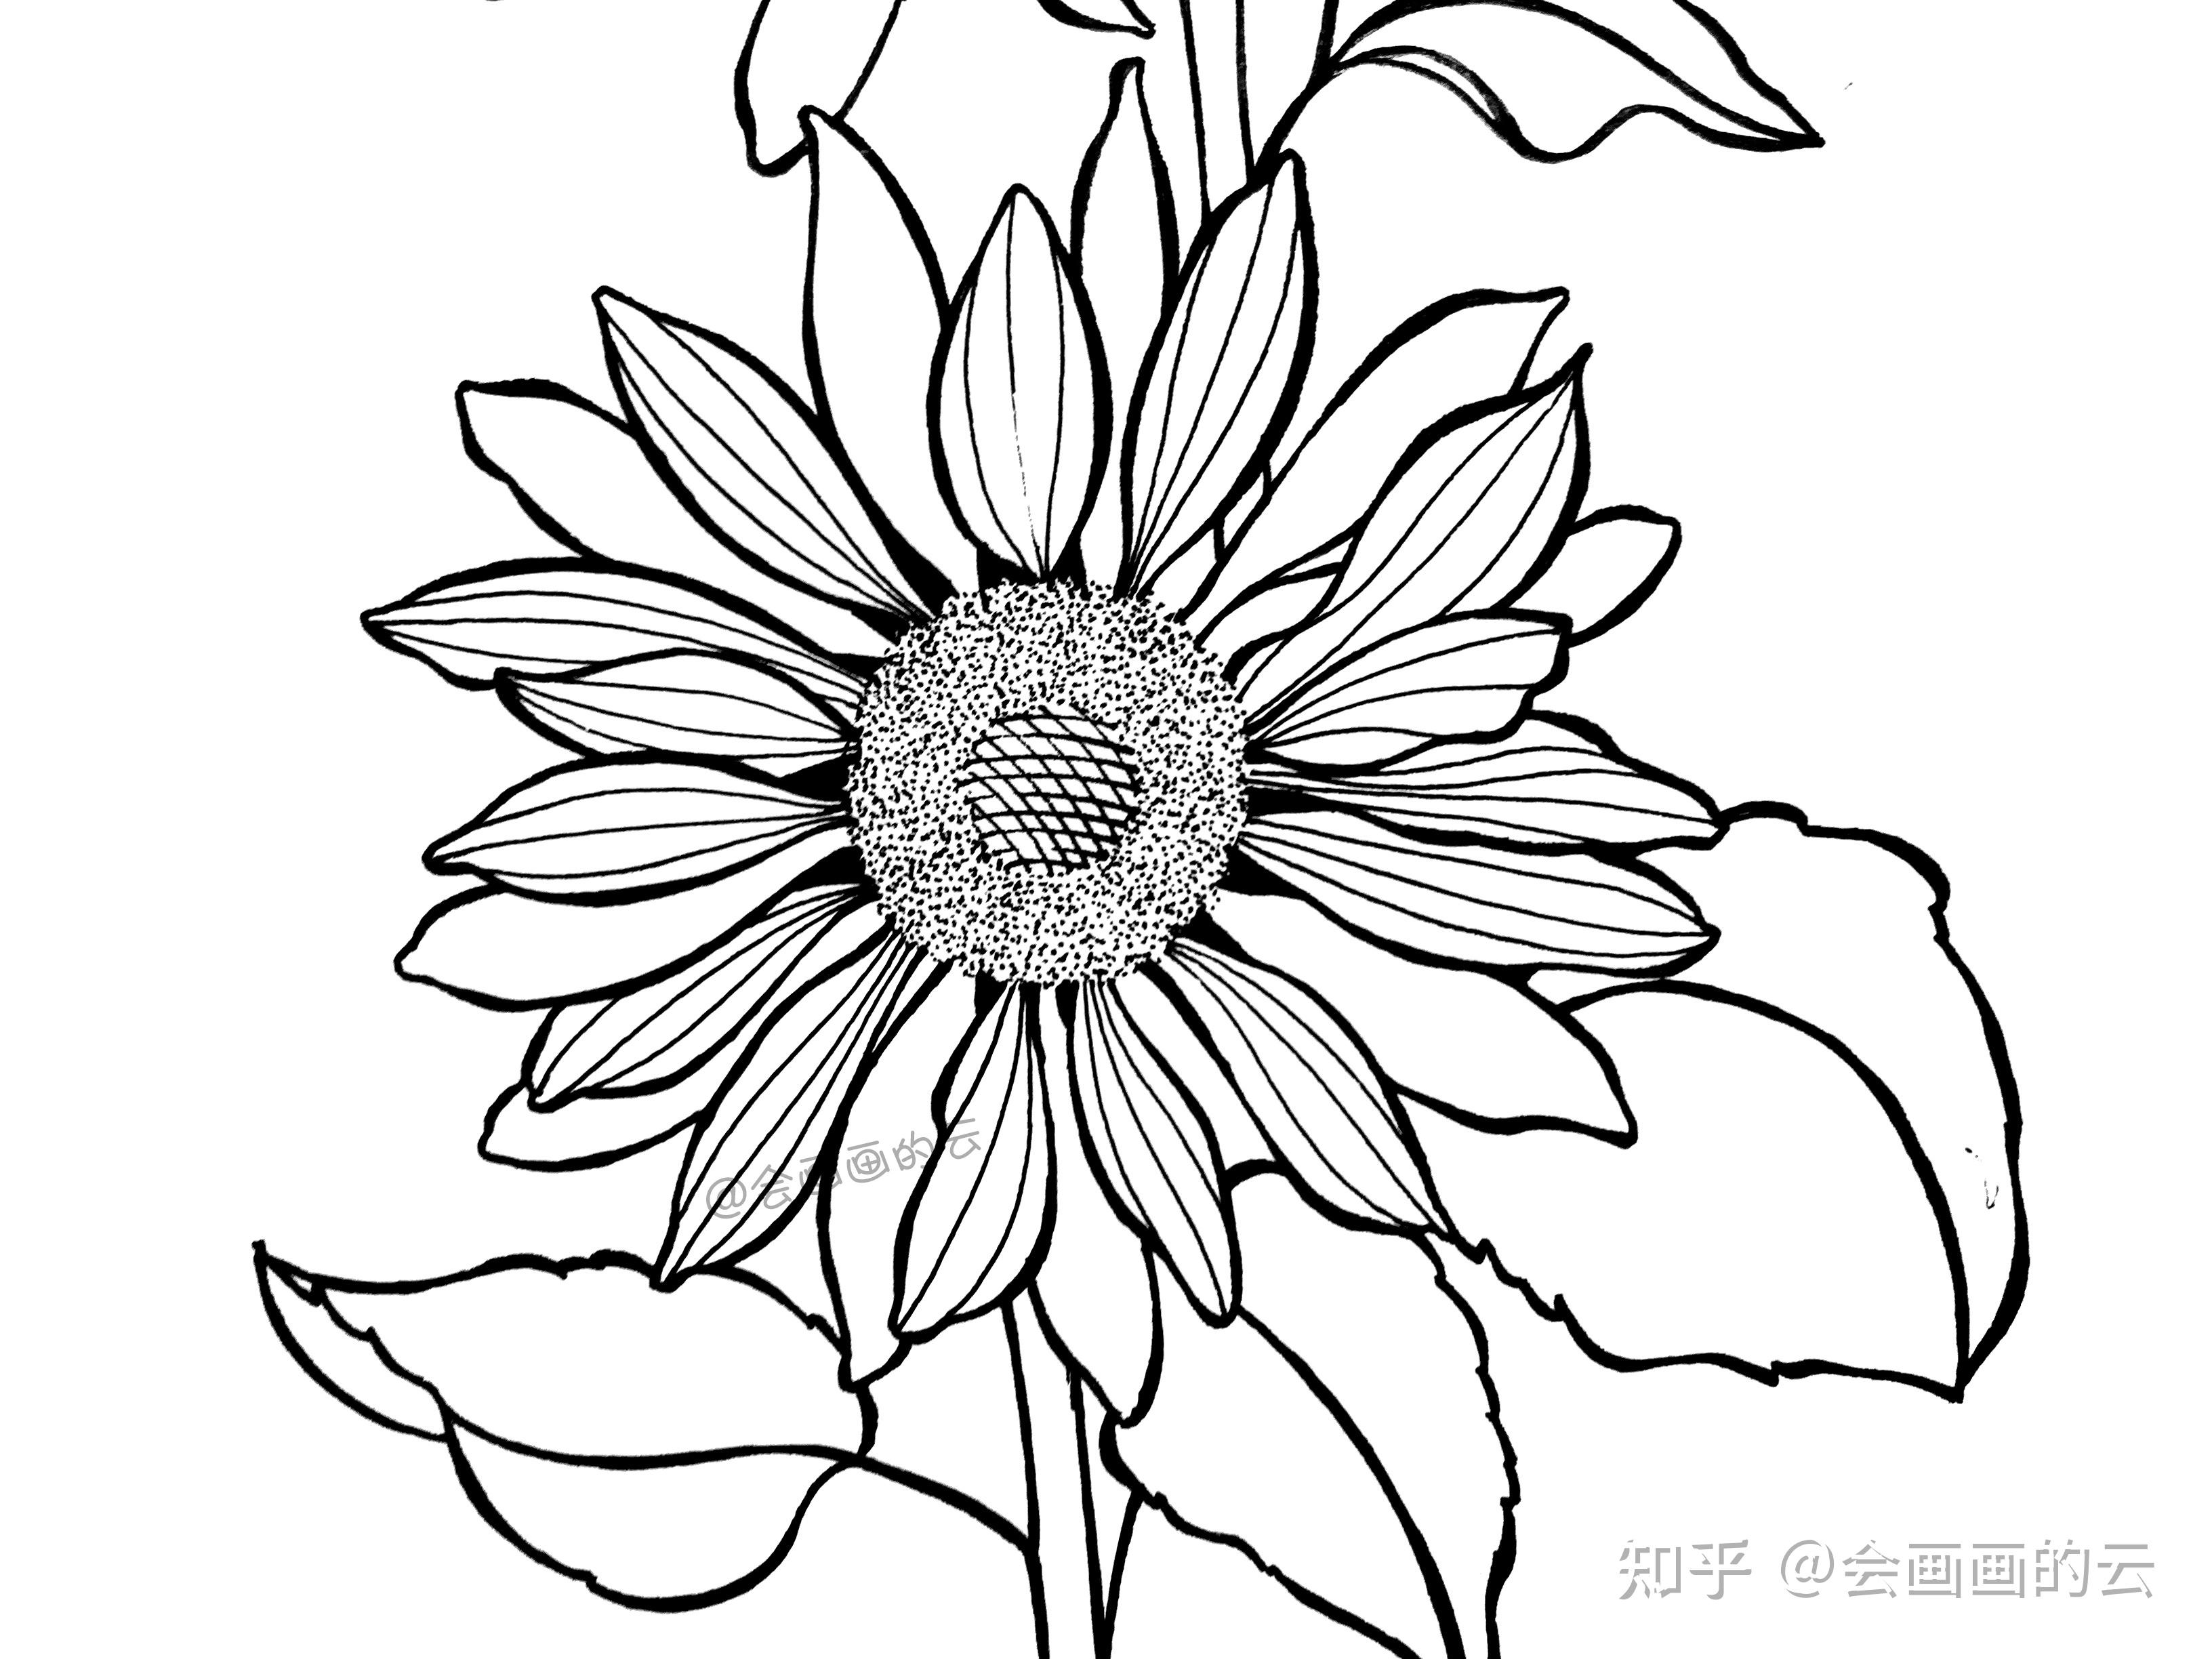 教你如何用一支笔画线描花卉